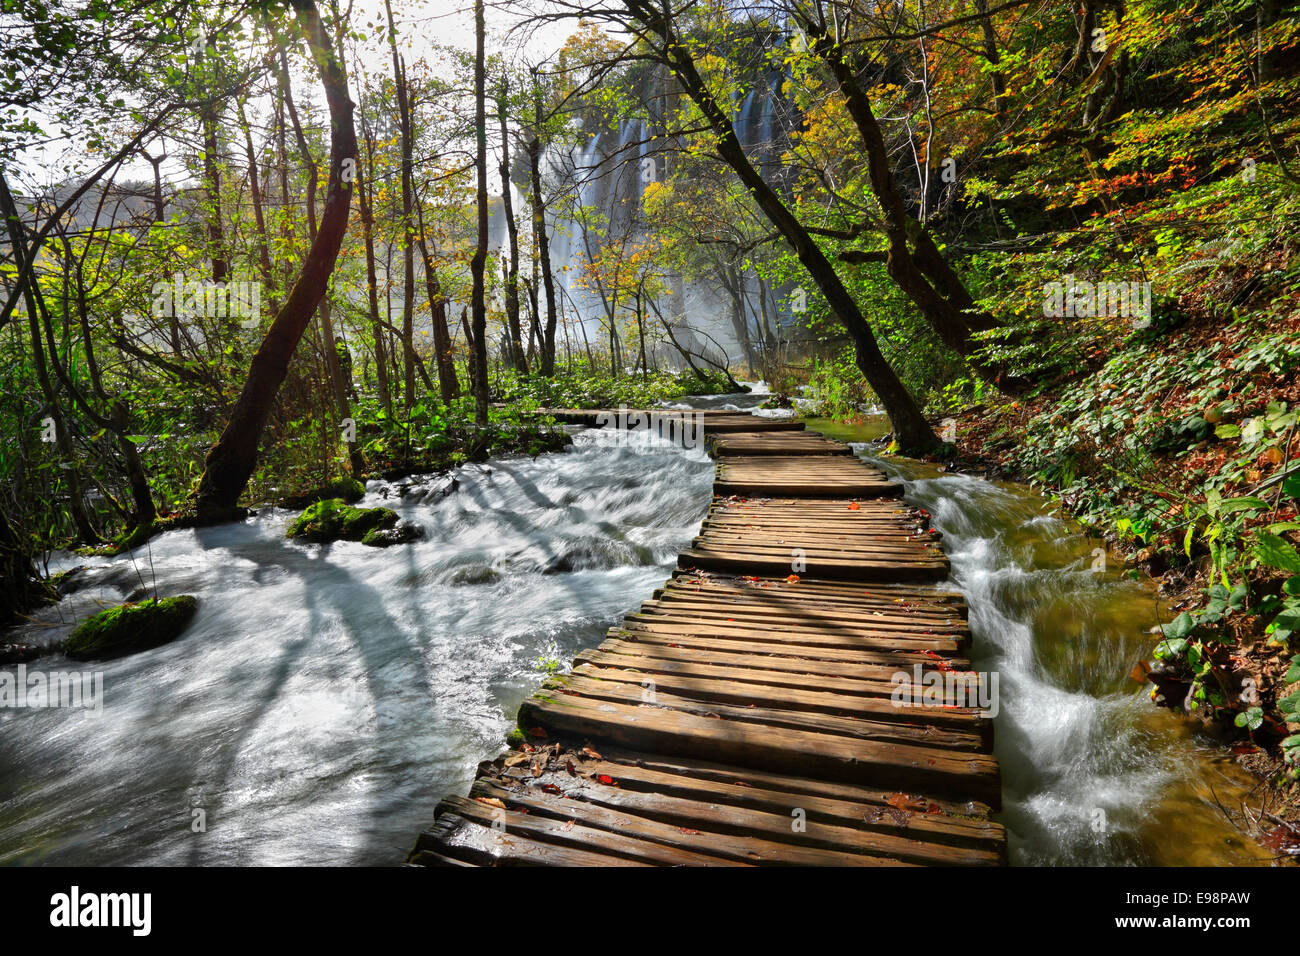 Le parc national des lacs de Plitvice, Croatie Banque D'Images